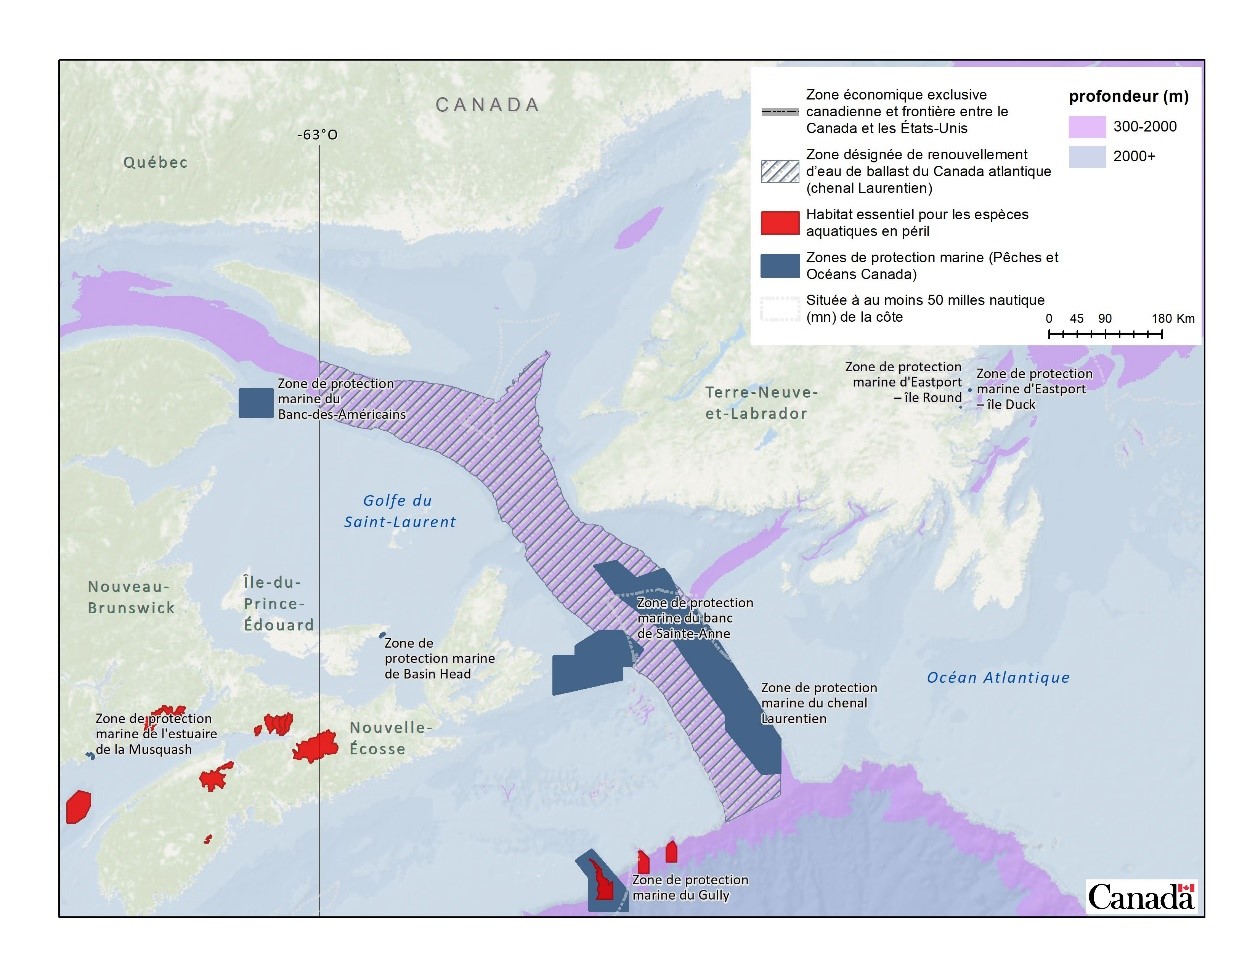 Figure 1. Zone désignée de renouvellement d’eau de ballast dans le golfe du Saint-Laurent